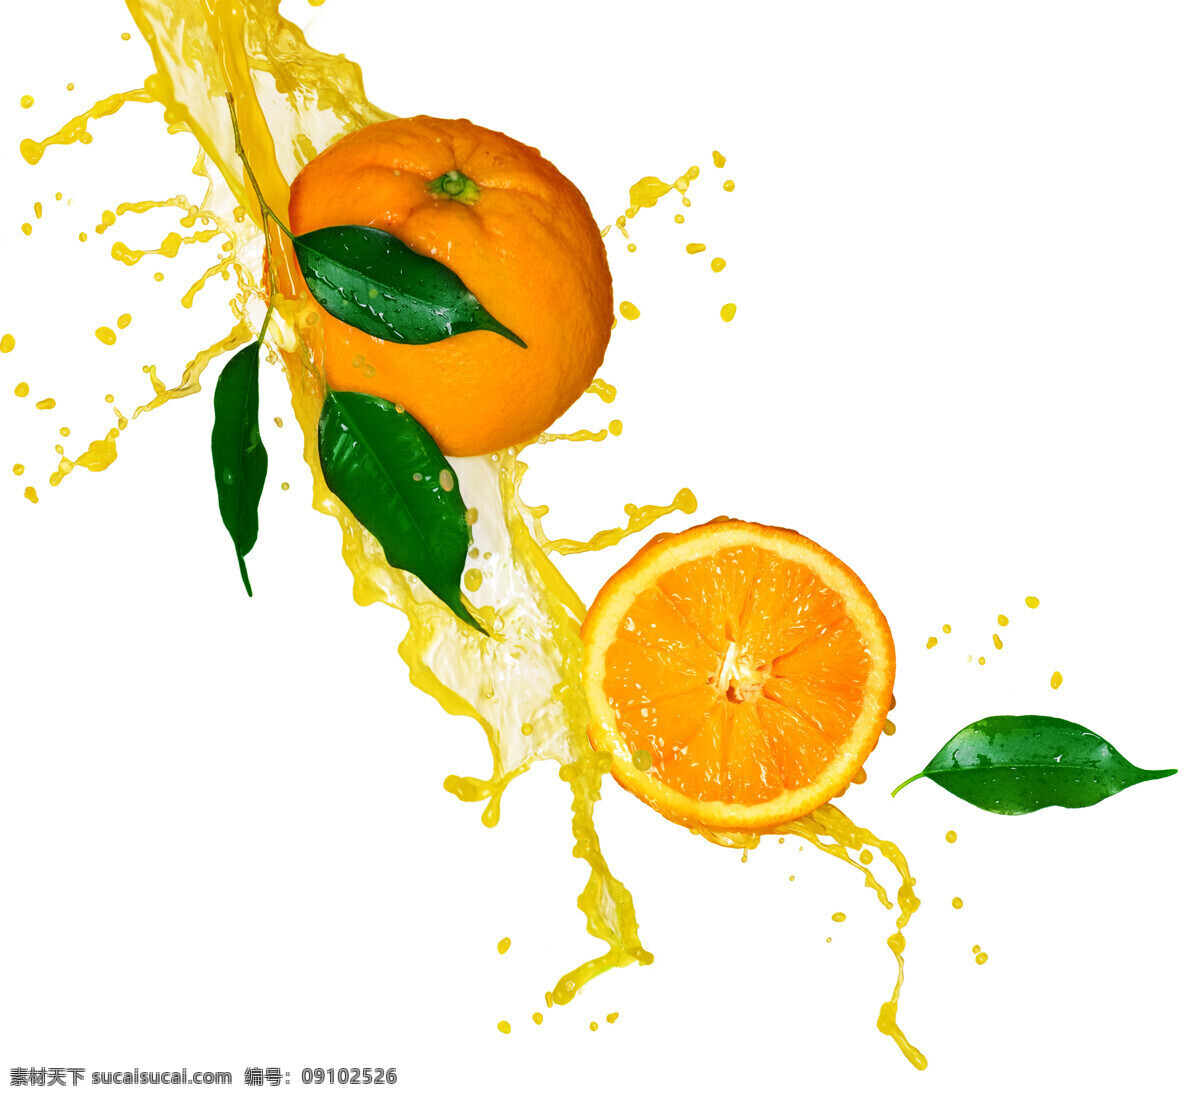 橙子图片素材 橙子 水果 清凉世界 果汁 鲜橙 健康水果 美味水果 照片 写真 生物世界 高清水果 蔬菜图片 餐饮美食